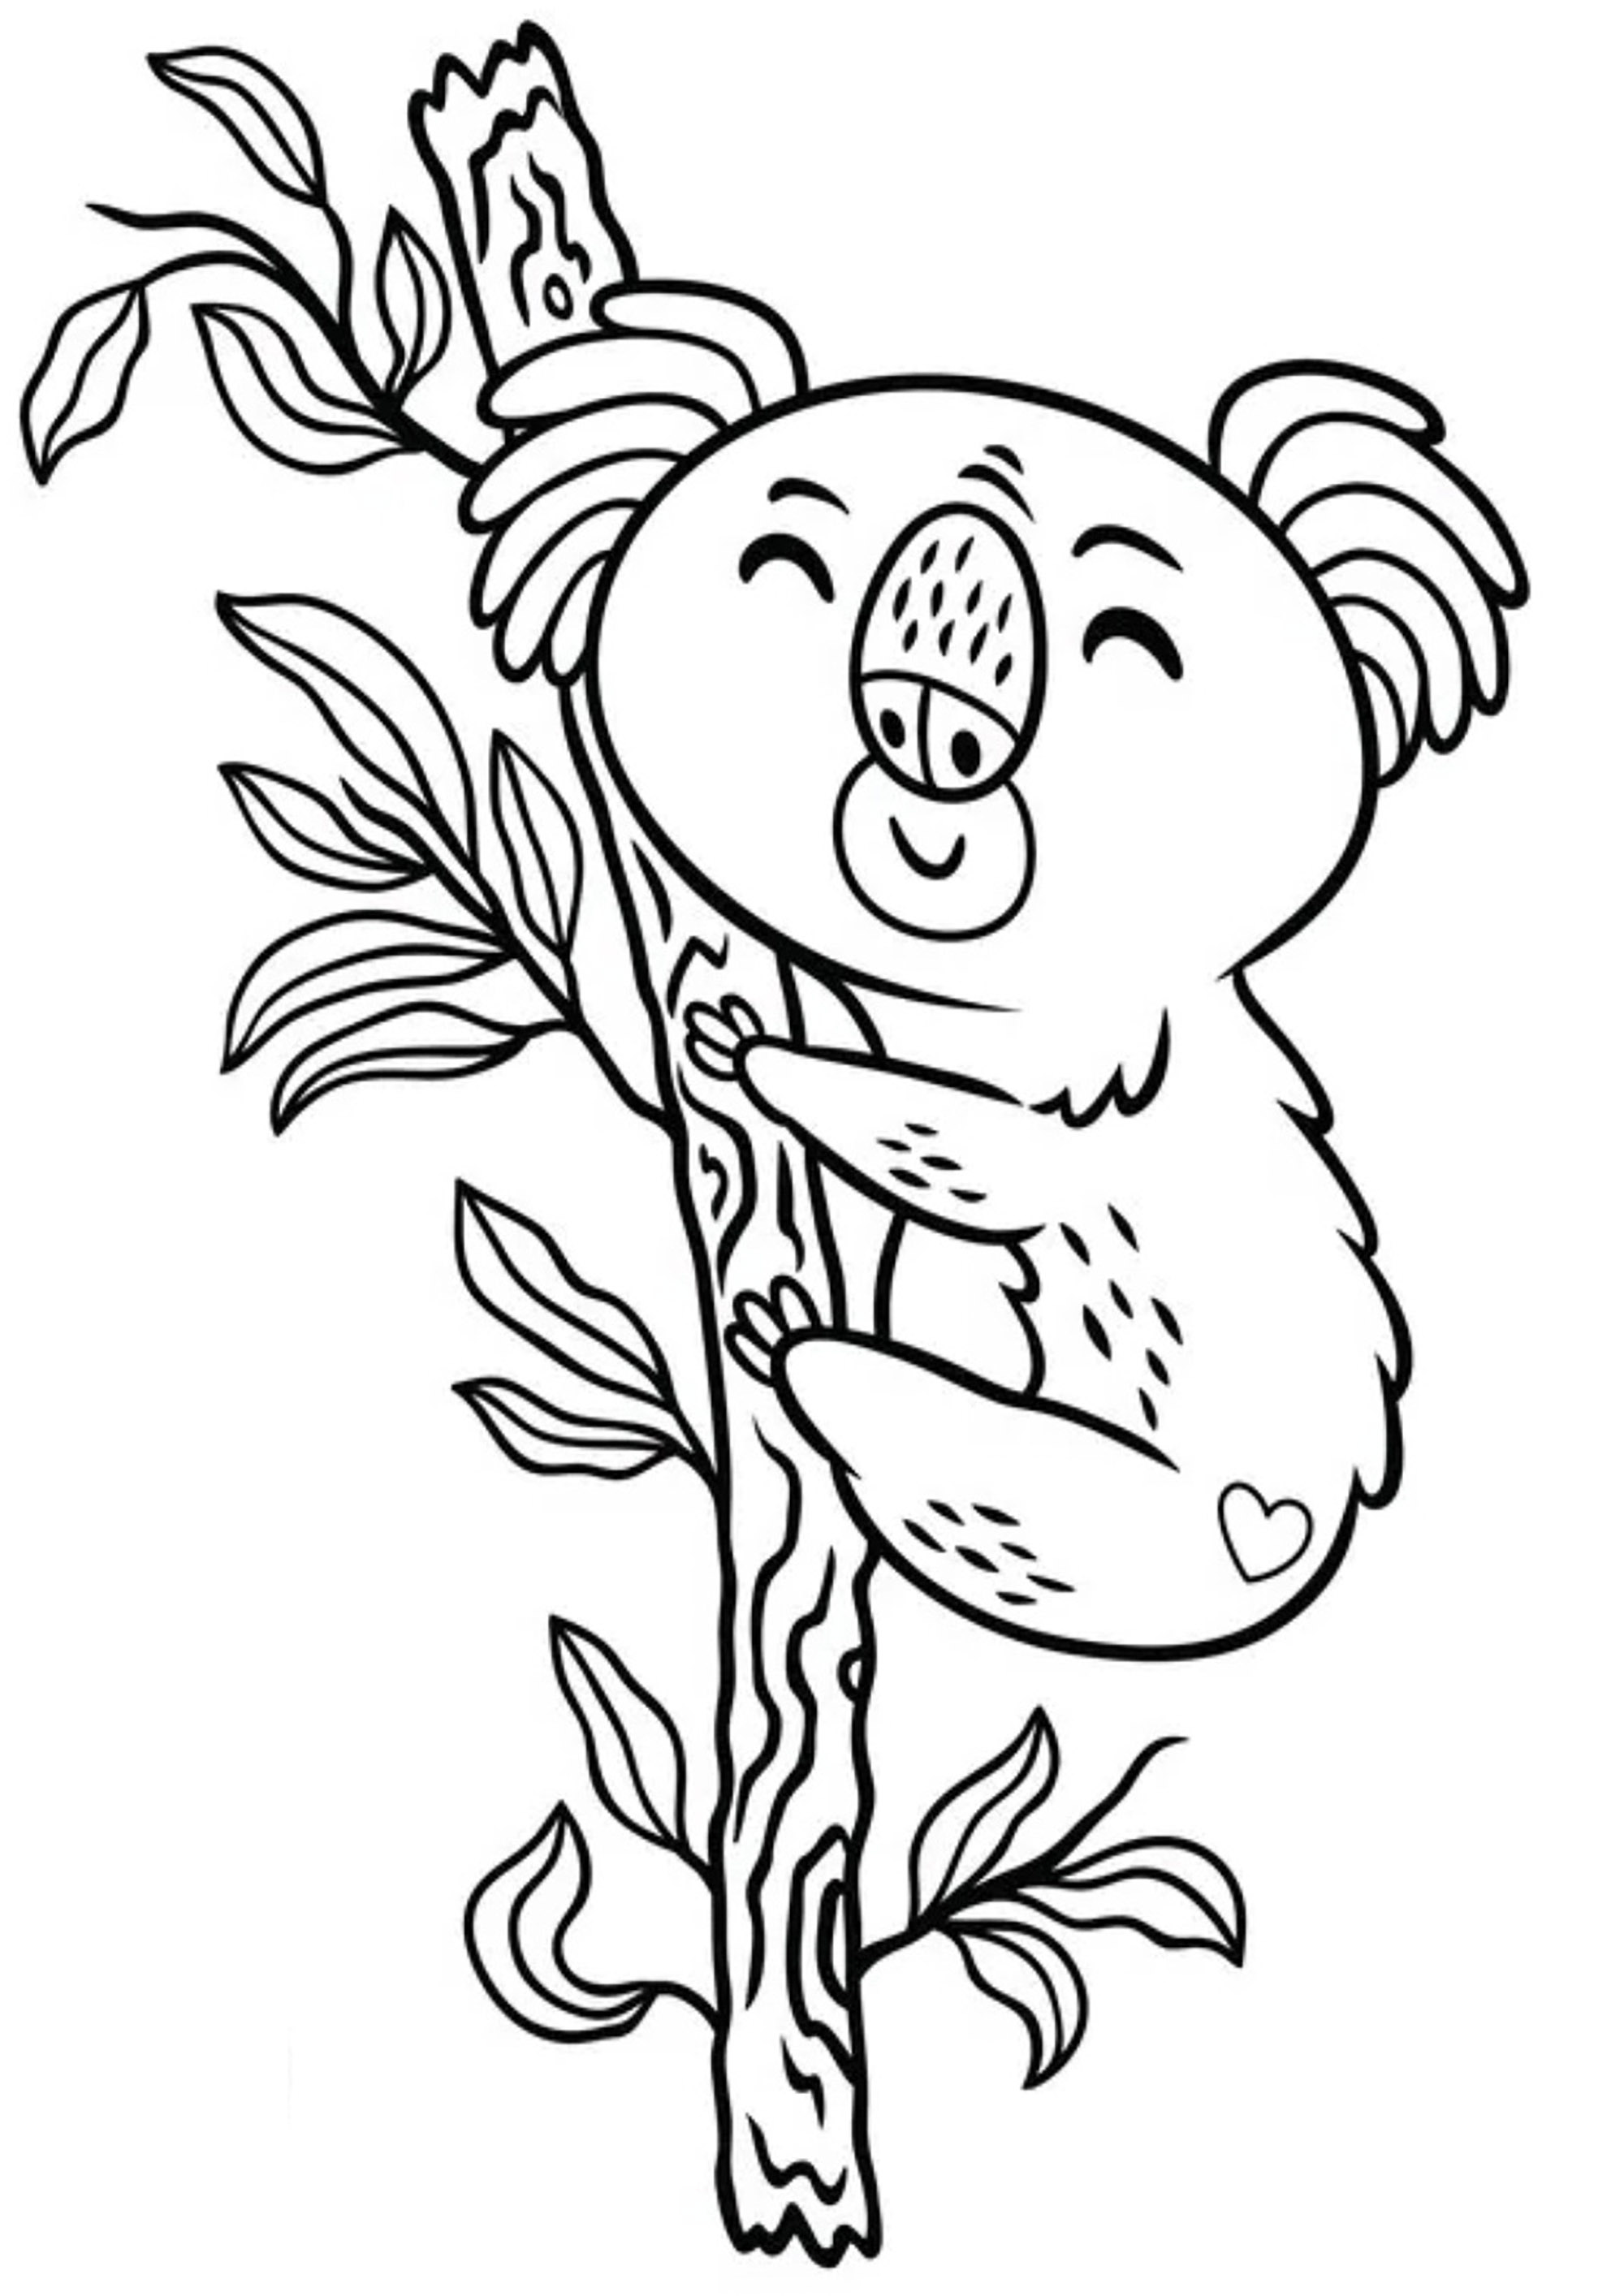 Dibujos para colorear para niños de Osos Koala para imprimir